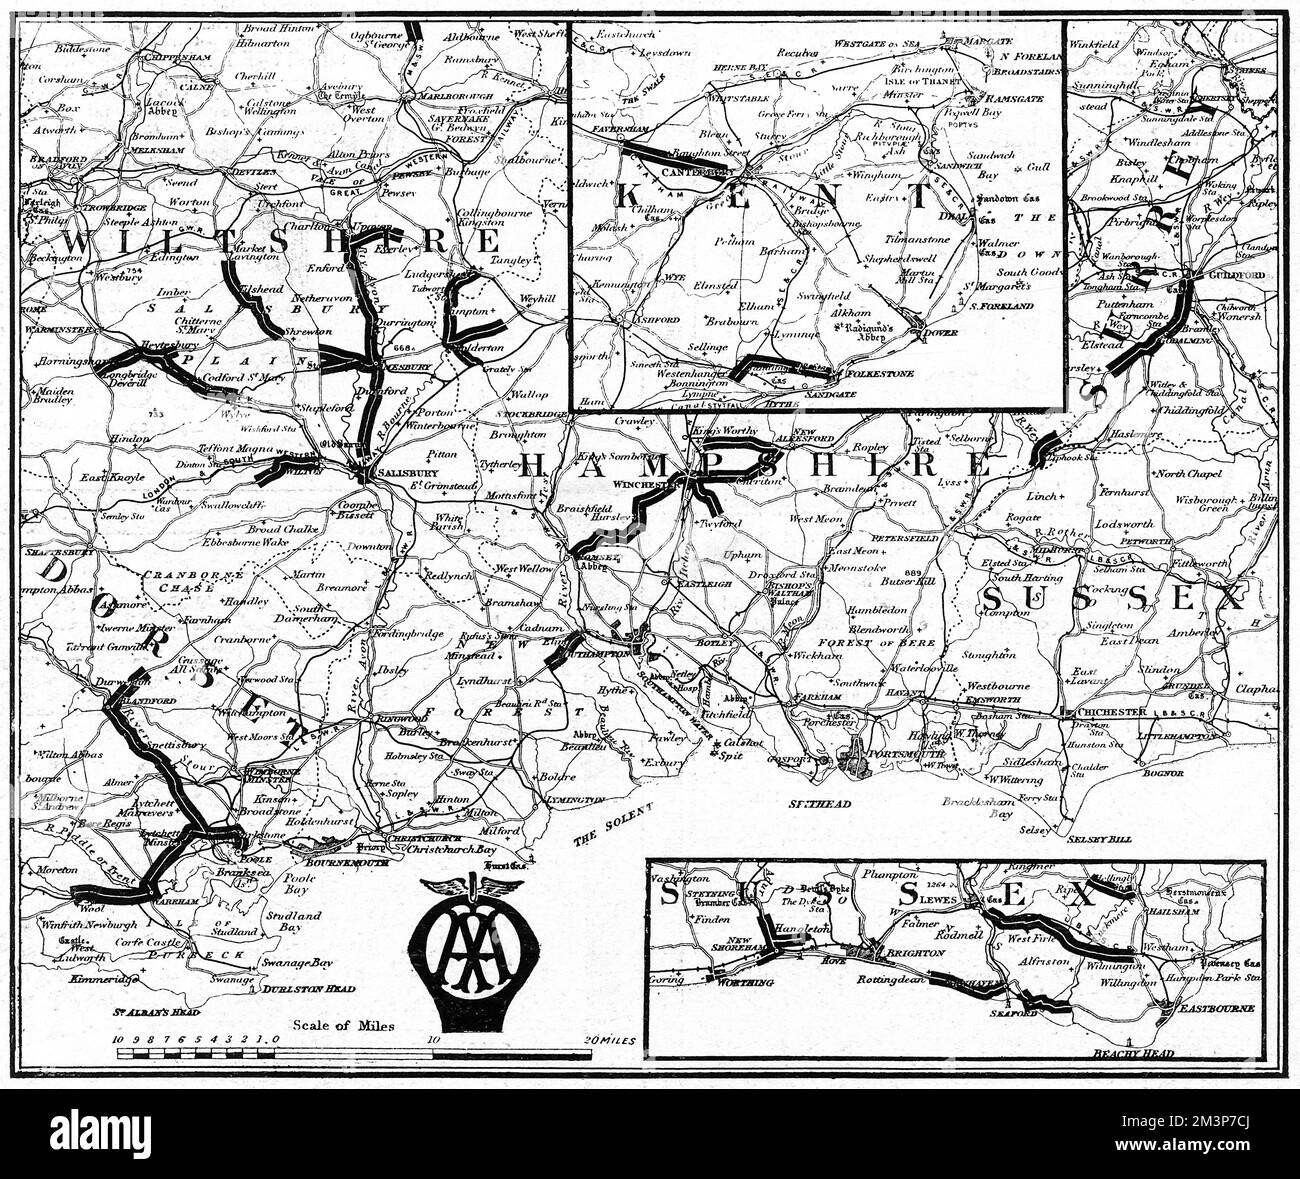 Eine Karte der südlichen Grafschaften Großbritanniens, die vom Automobilverband und dem Automobilverband erstellt wurde, um die Straßenabschnitte anzugeben, die durch den Militärverkehr stark beschädigt wurden und die zivilen Autofahrern zu vermeiden empfohlen wurden. Straßen in Wiltshire, Dorset, Hampshire, Sussex und Kent werden angezeigt. Datum: 1915 Stockfoto